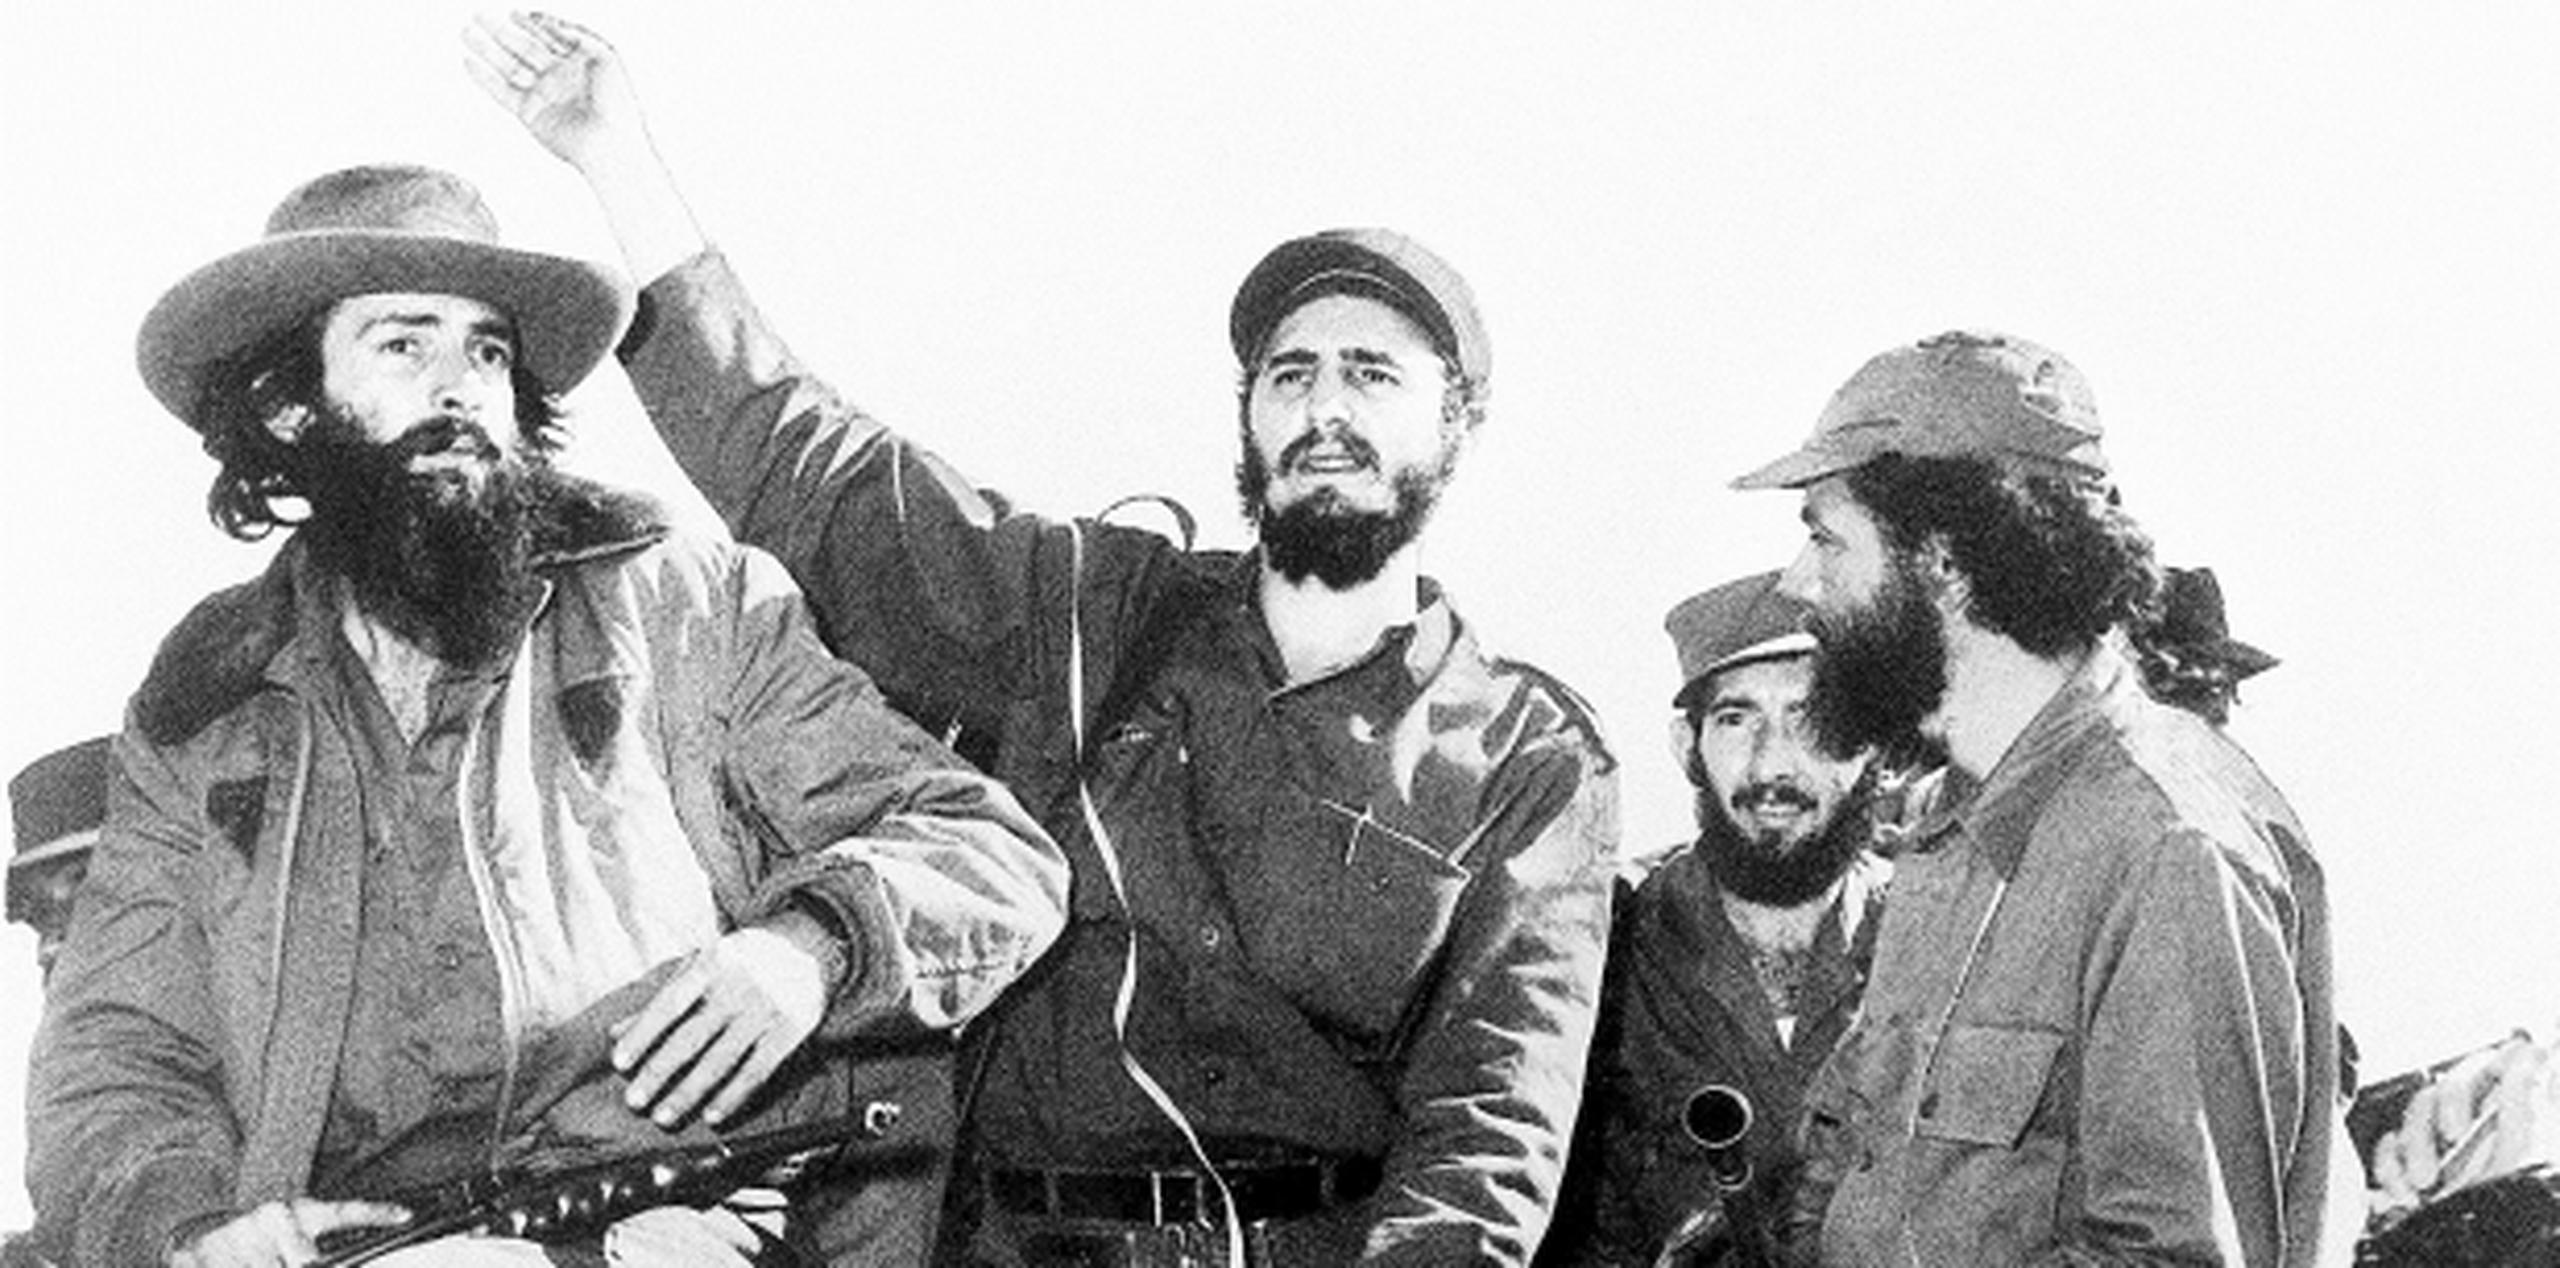 Fidel Castro entre otros líderes de la Revolución Cubana, Camilo Cienfuegos (a su izquierda) y Huber Matos (a su derecha), saluda desde un jeep a su entrada a La Habana en enero de 1959, luego de la victoria sobre las fuerzas de Fulgencio Batista. (Archivo)